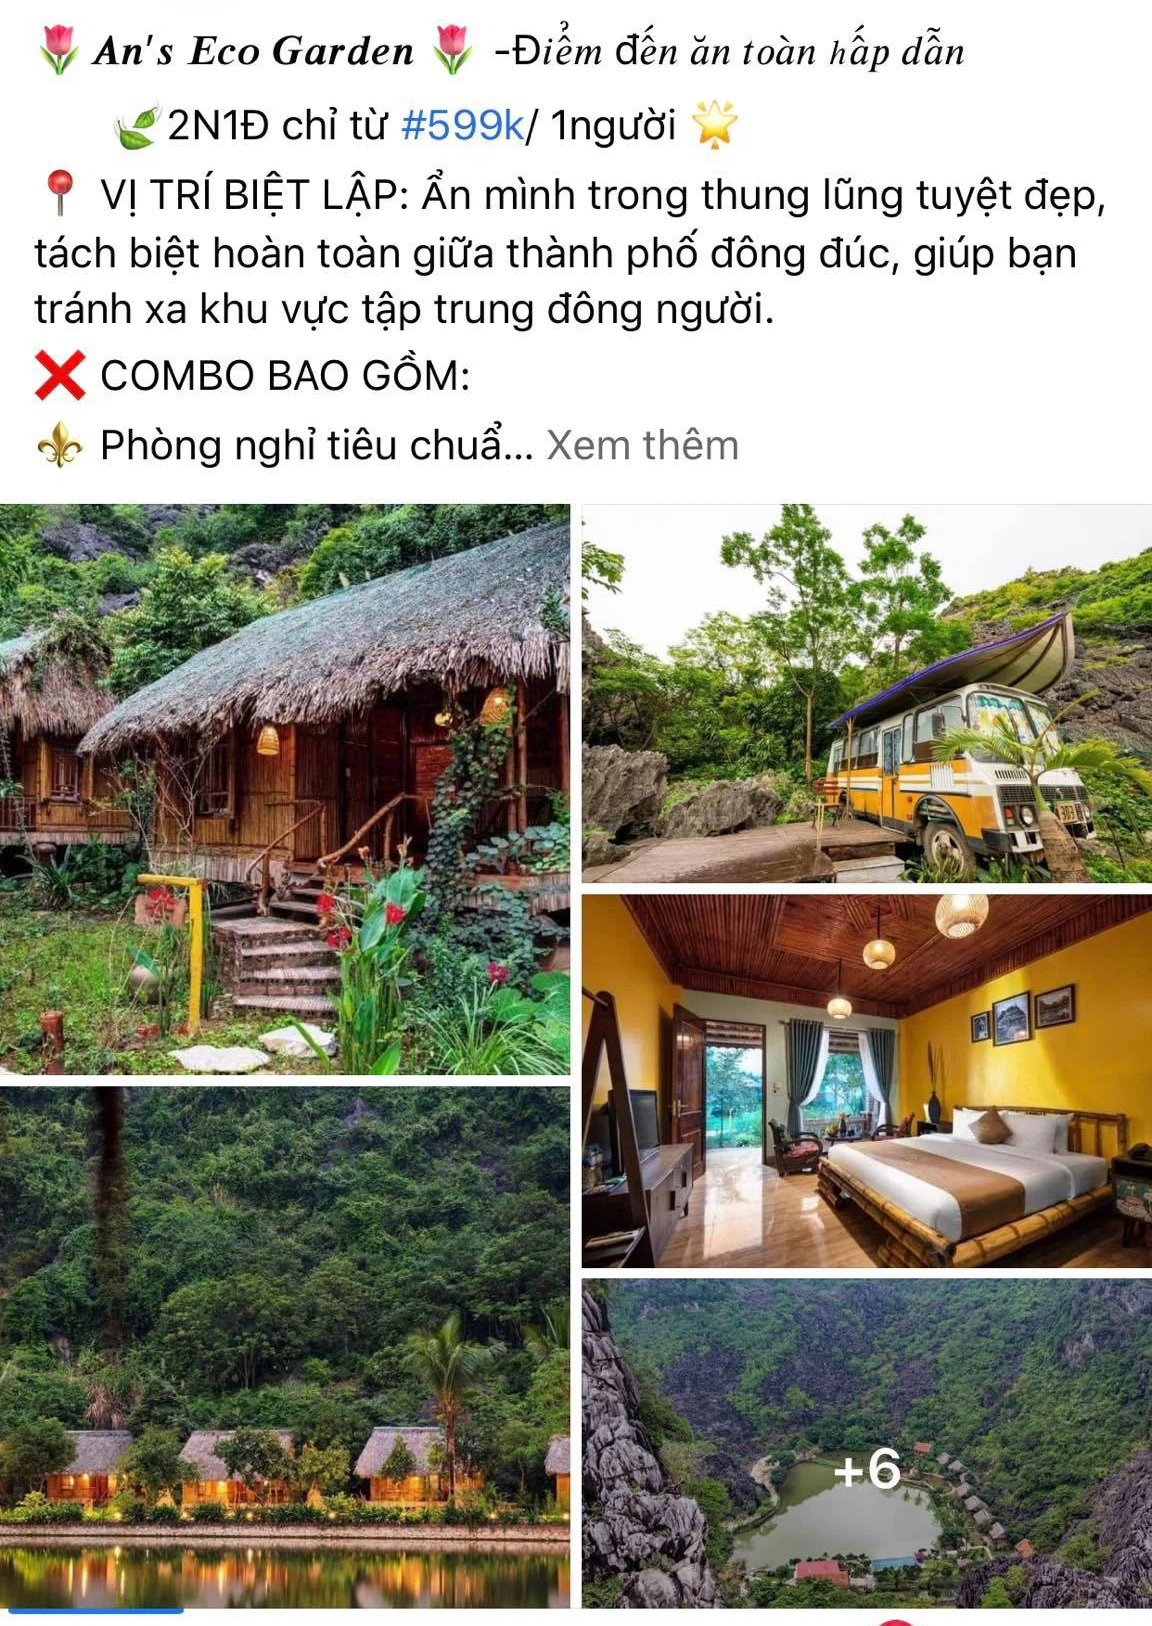 Nhiều địa phương rục rịch mở cửa, khách Việt ồ ạt lên mạng săn voucher du lịch giá siêu rẻ - Ảnh 1.